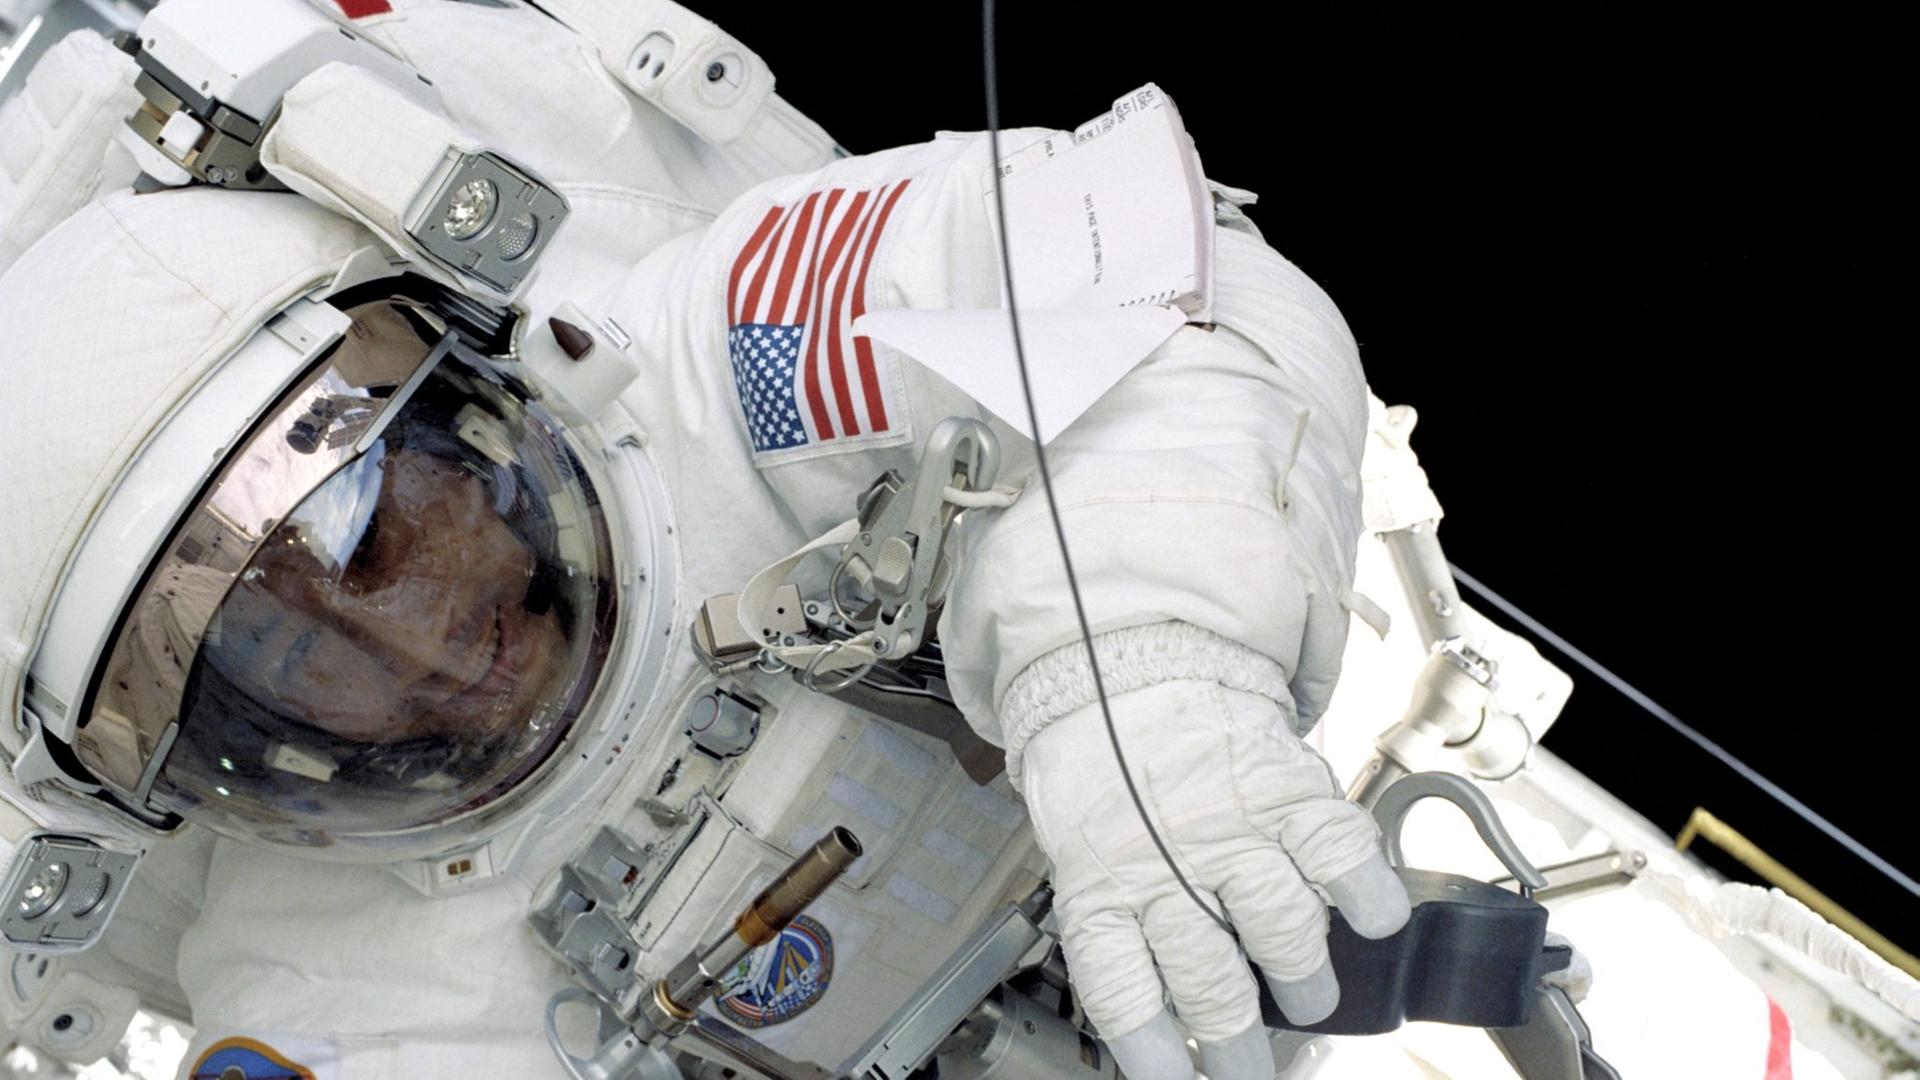 Ed Lu, der heute sechzig Jahre alt wird, war zweimal mit dem Space Shuttle im All. Zudem verbrachte er ein halbes Jahr auf der Internationalen Raumstation.